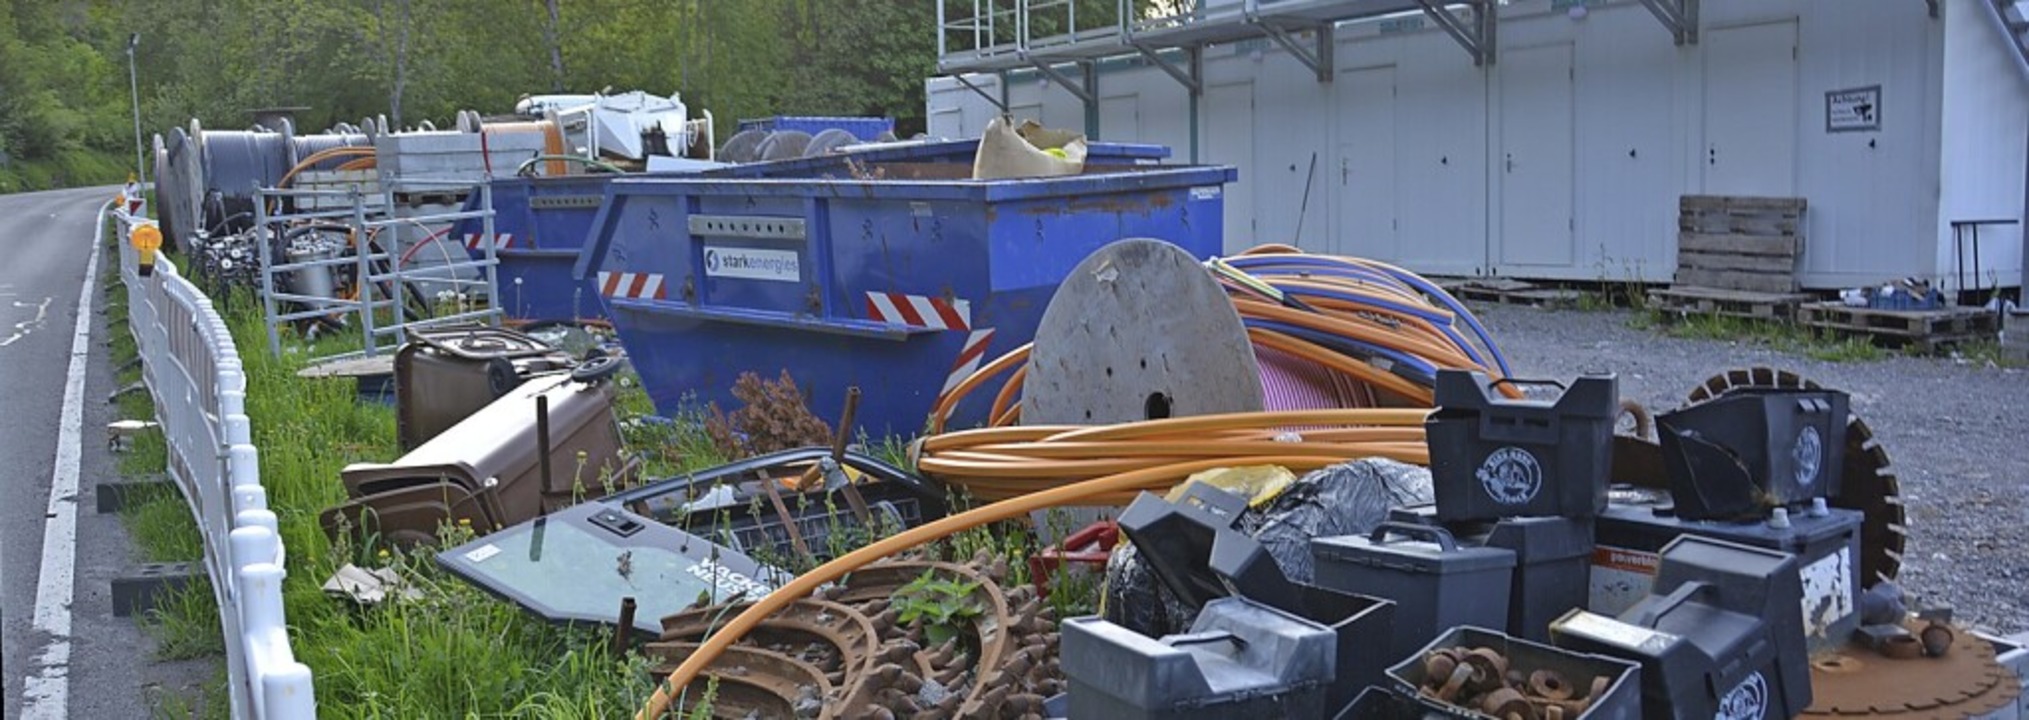 Was passiert mit den Hinterlassenschaf... Geräten und Abfällen  aufgelöst wird.  | Foto: Sebastian Barthmes